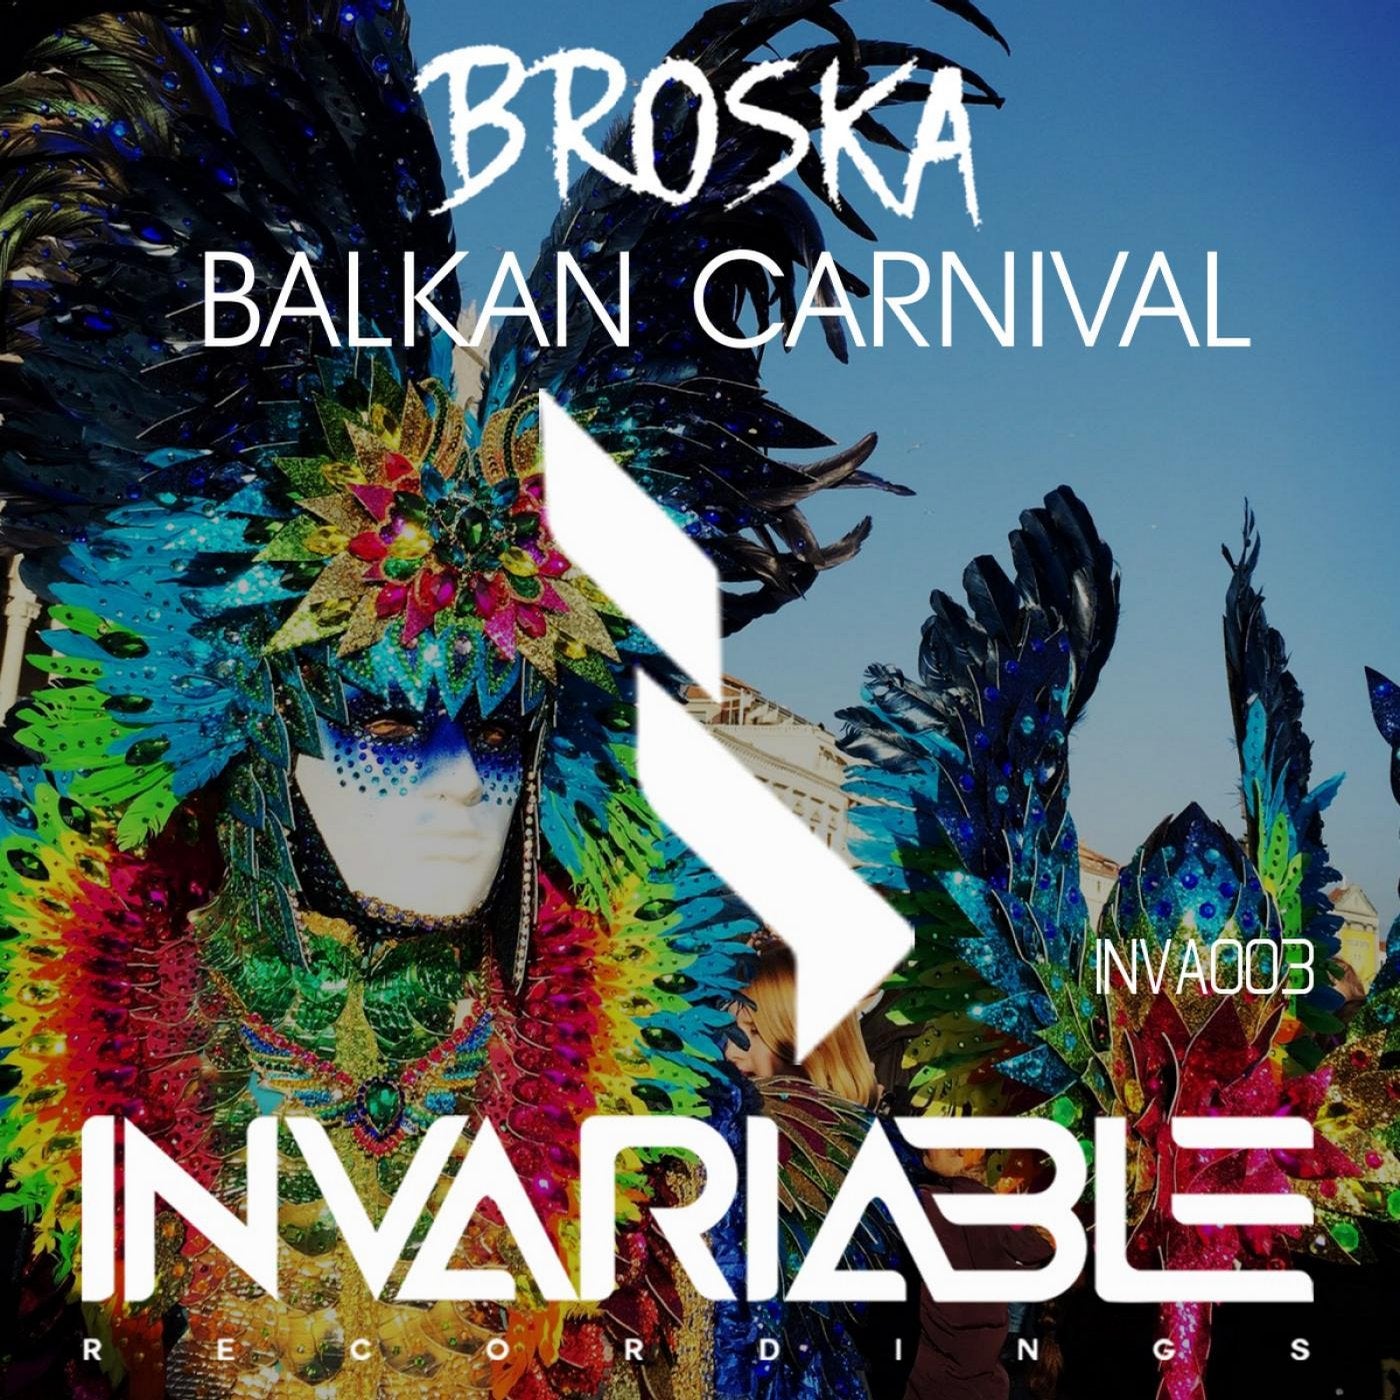 Balkan carnival